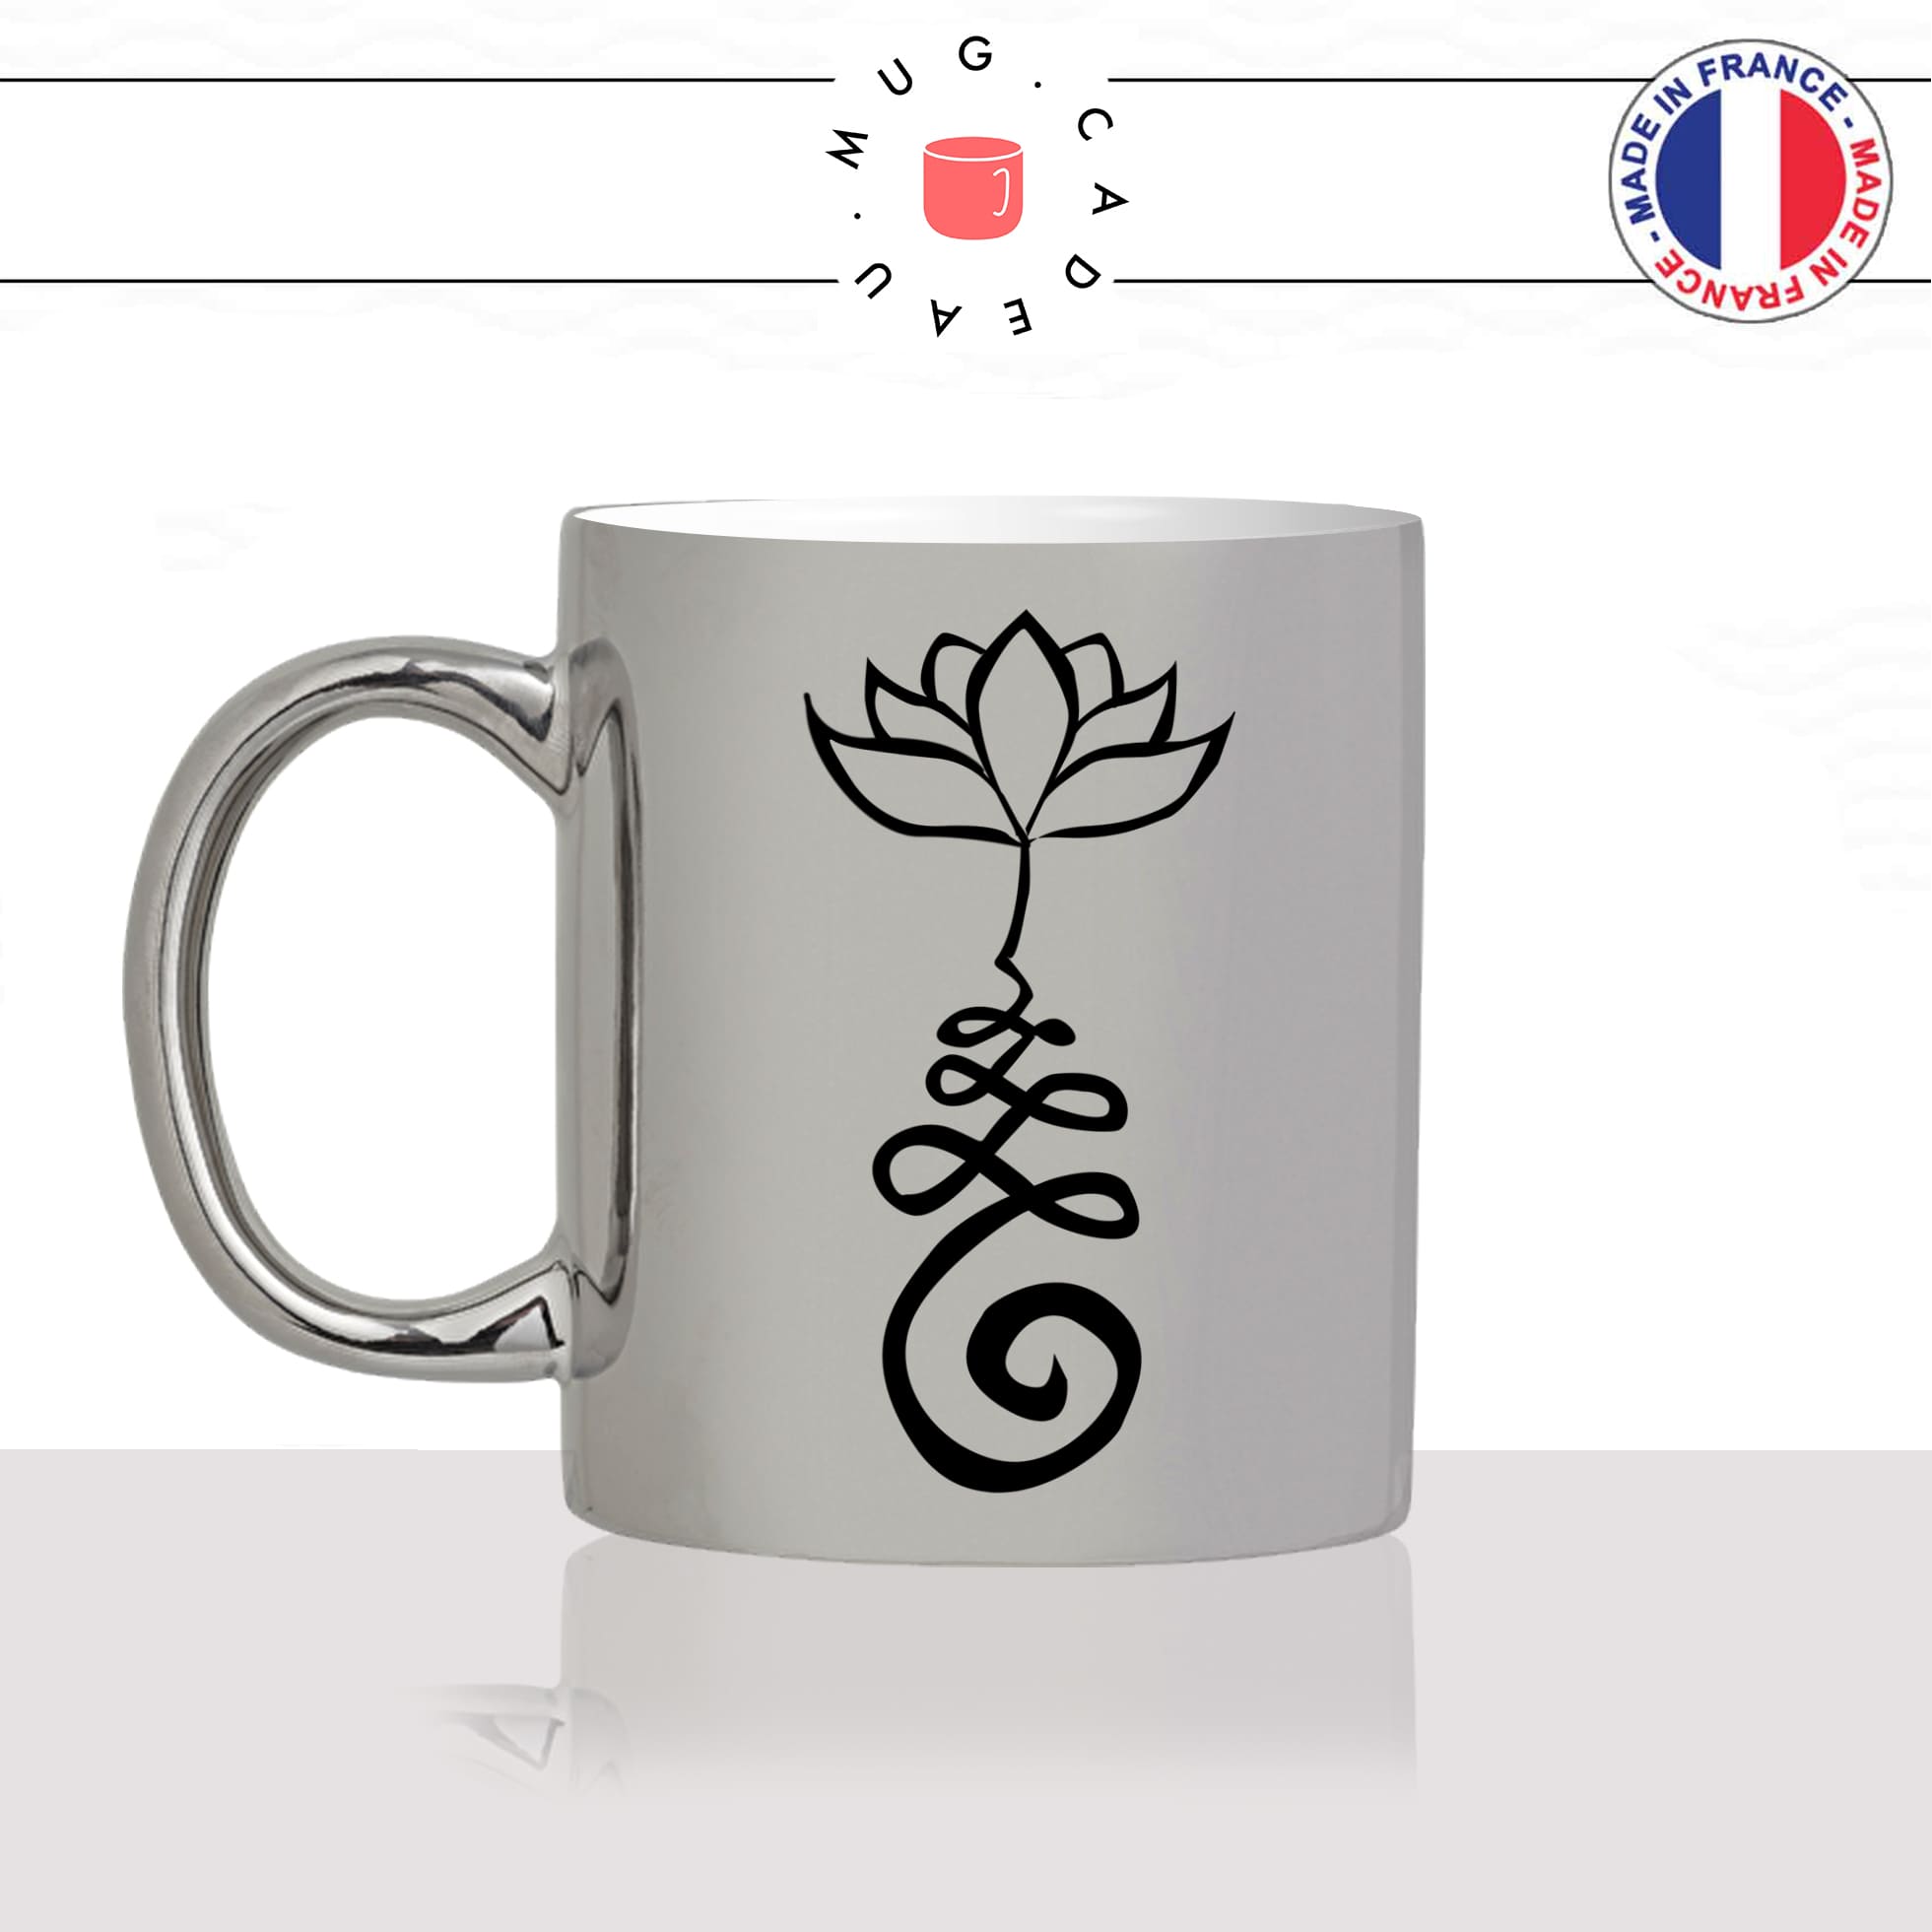 mug-tasse-argent-argenté-silver-fleur-fleurs-flower-lotus-bouddha-dessin-decoration-mignon-joli-idée-cadeau-fun-cool-café-thé